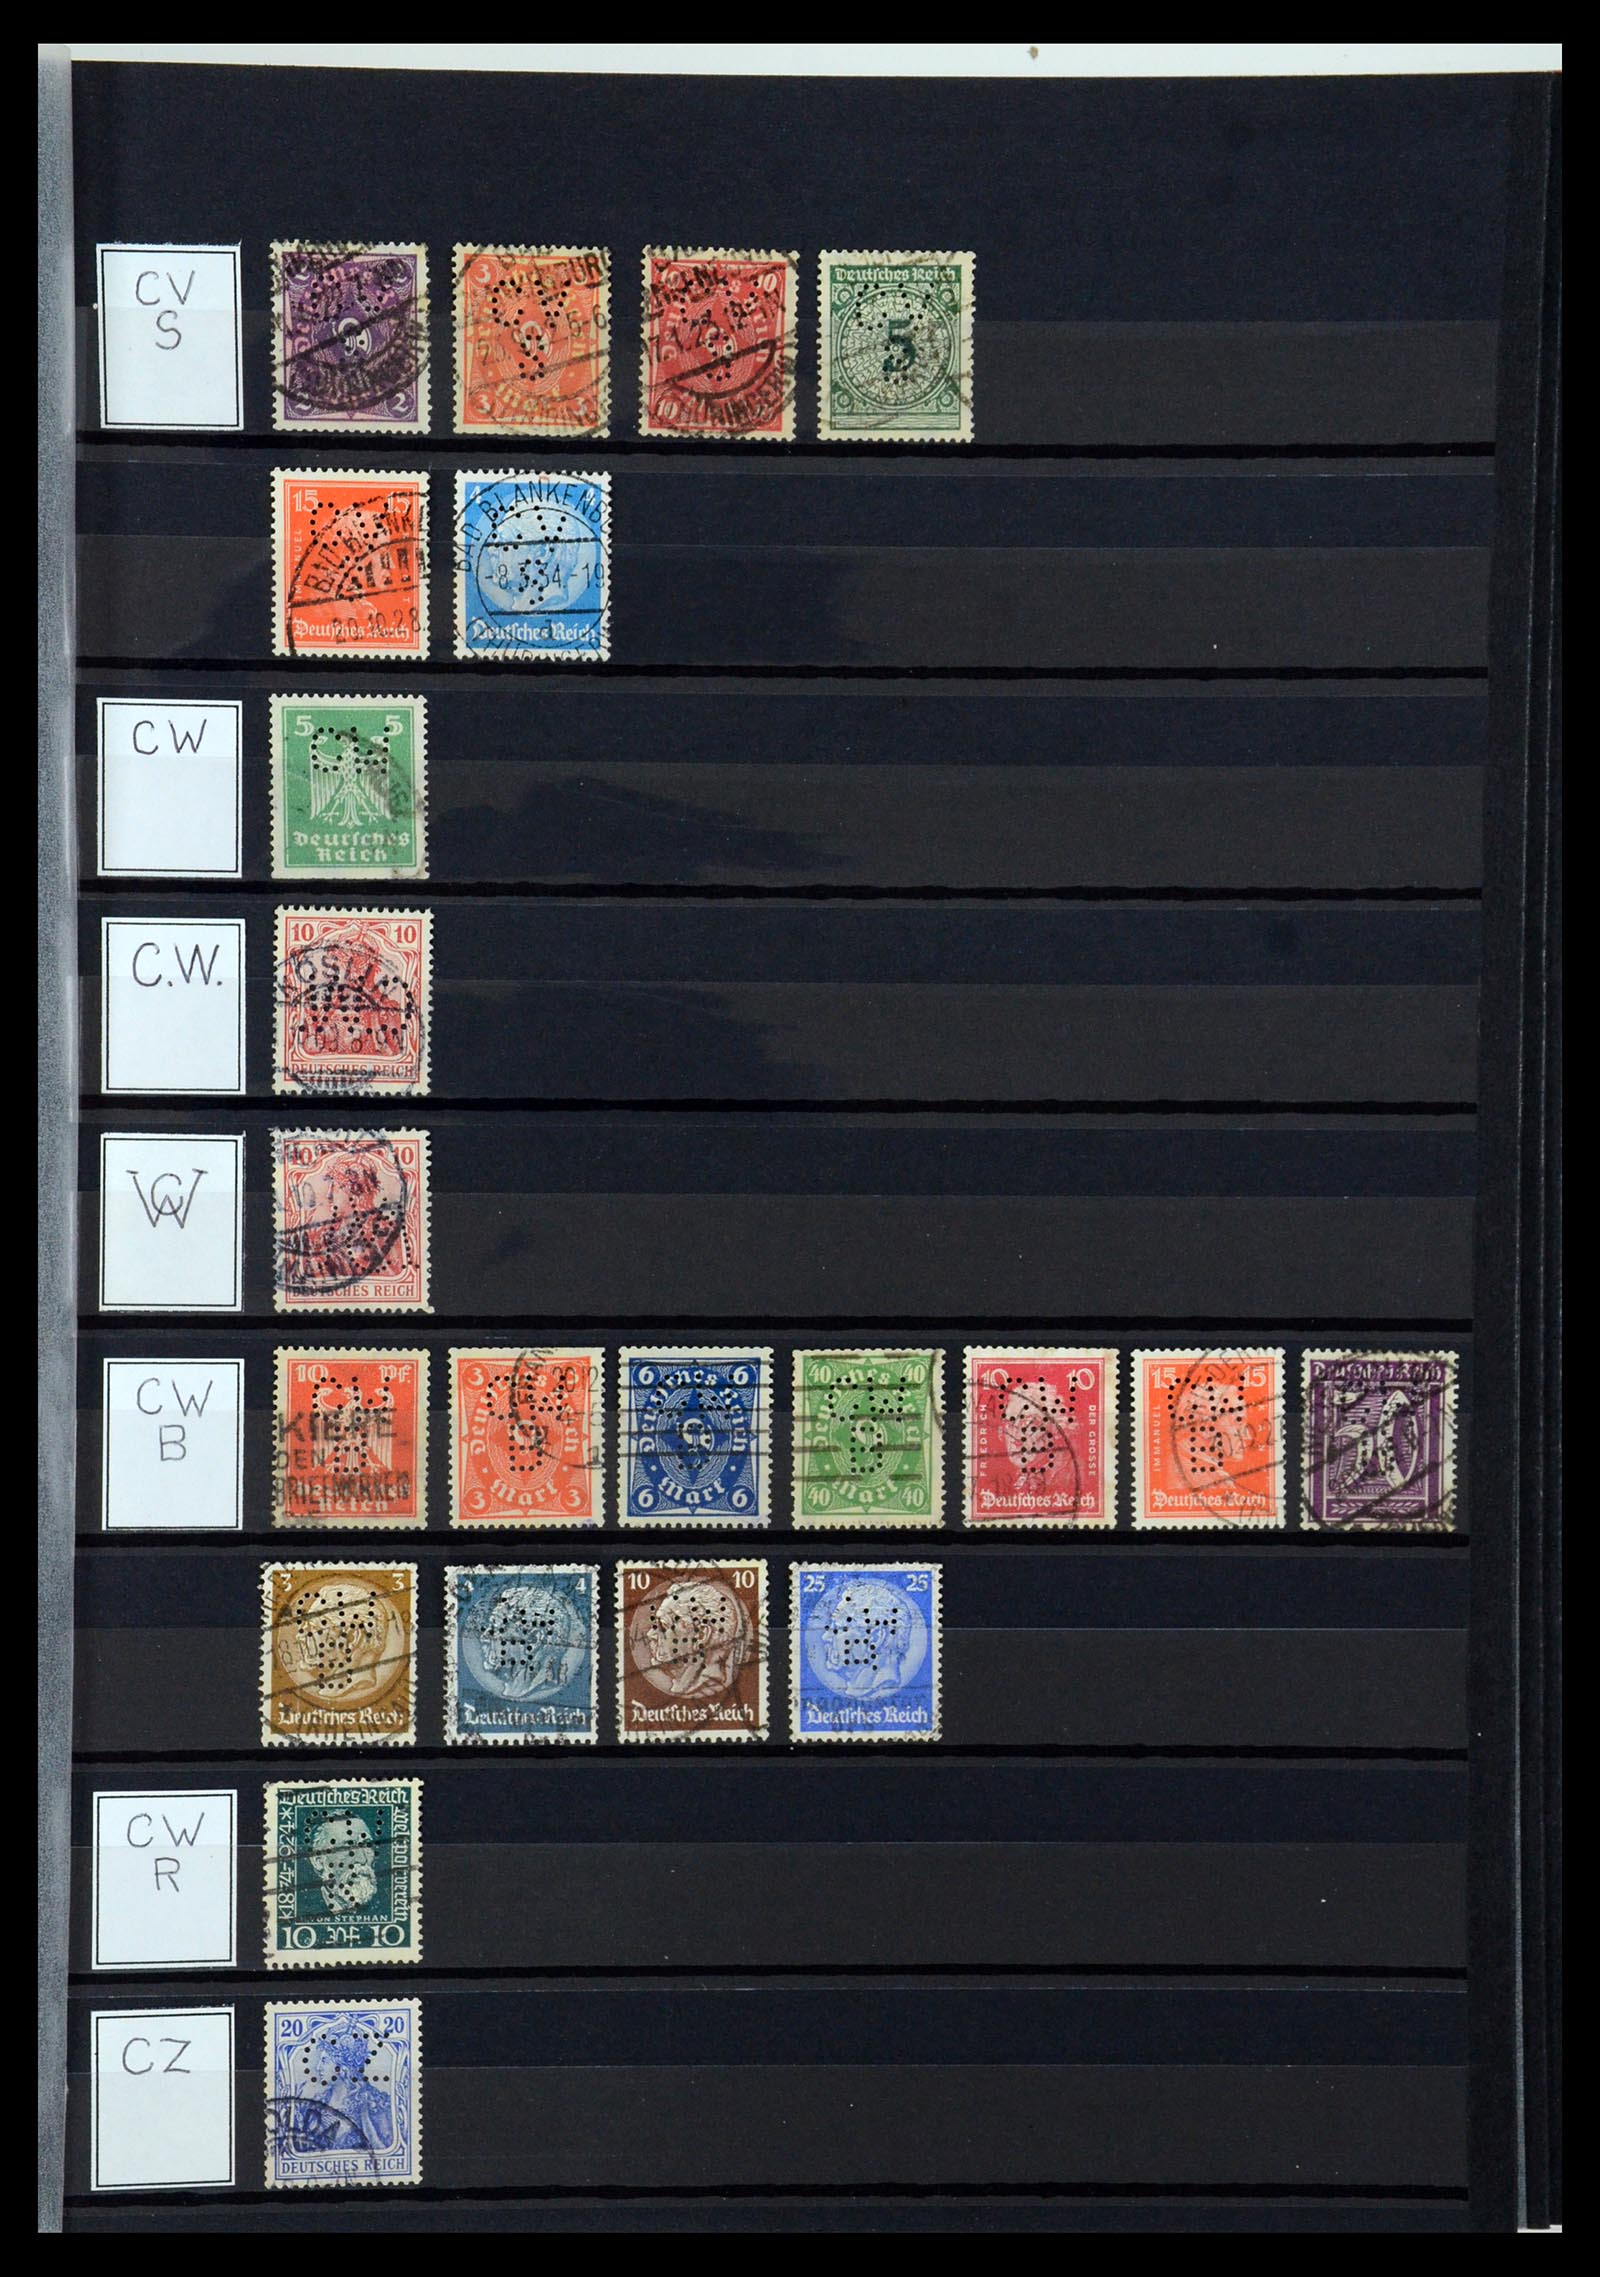 36405 085 - Stamp collection 36405 German Reich perfins 1880-1945.